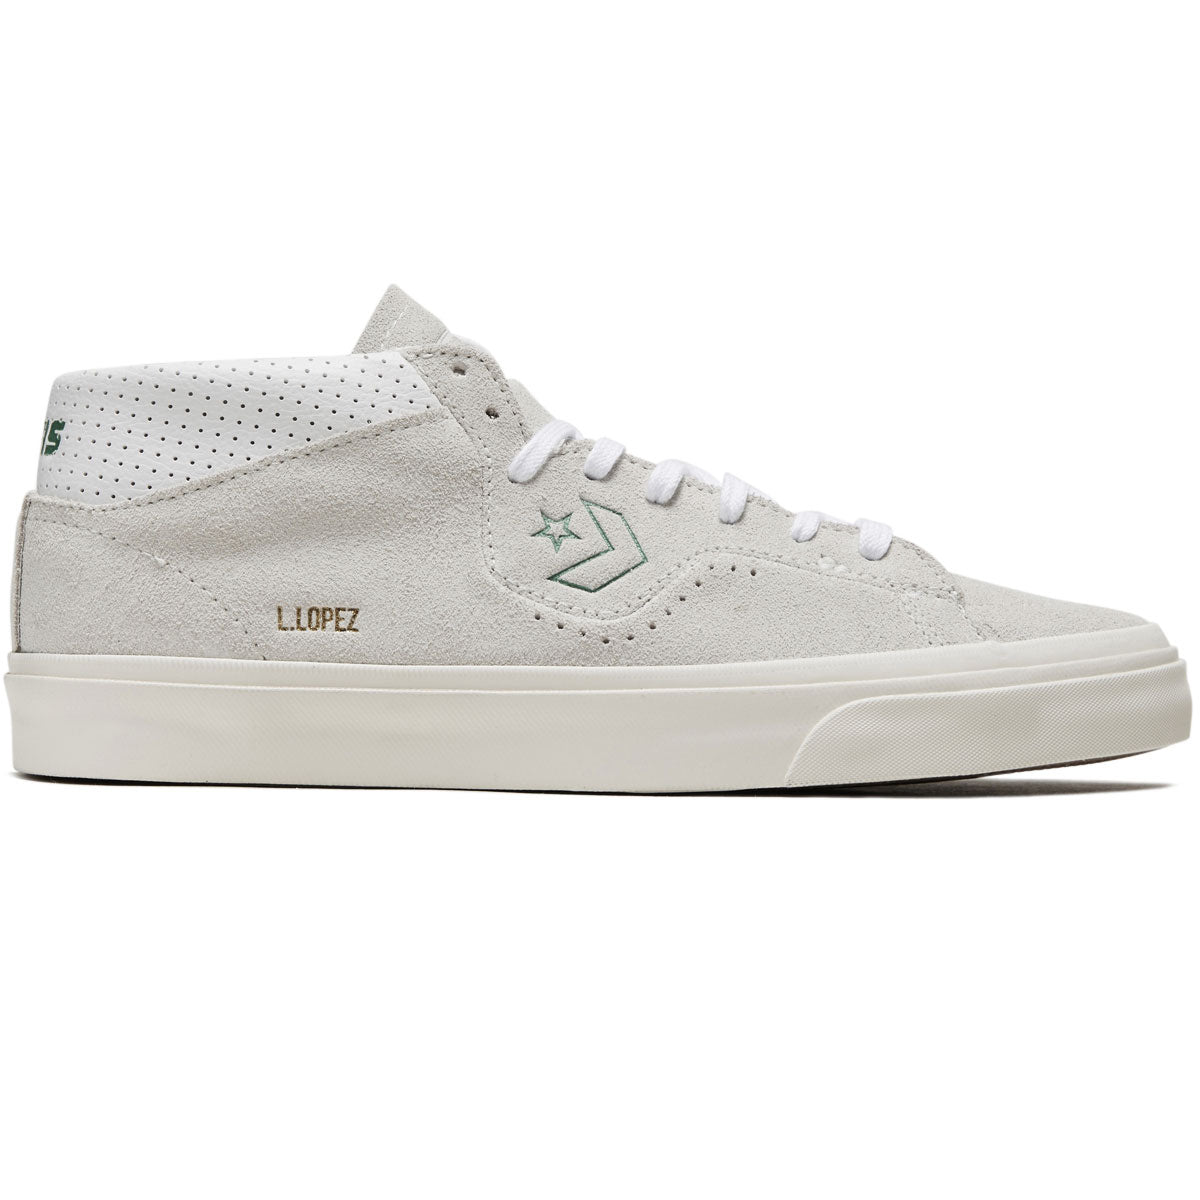 Converse Louie Lopez Pro Mid Shoes - Vaporous Gray/White/Egret image 1